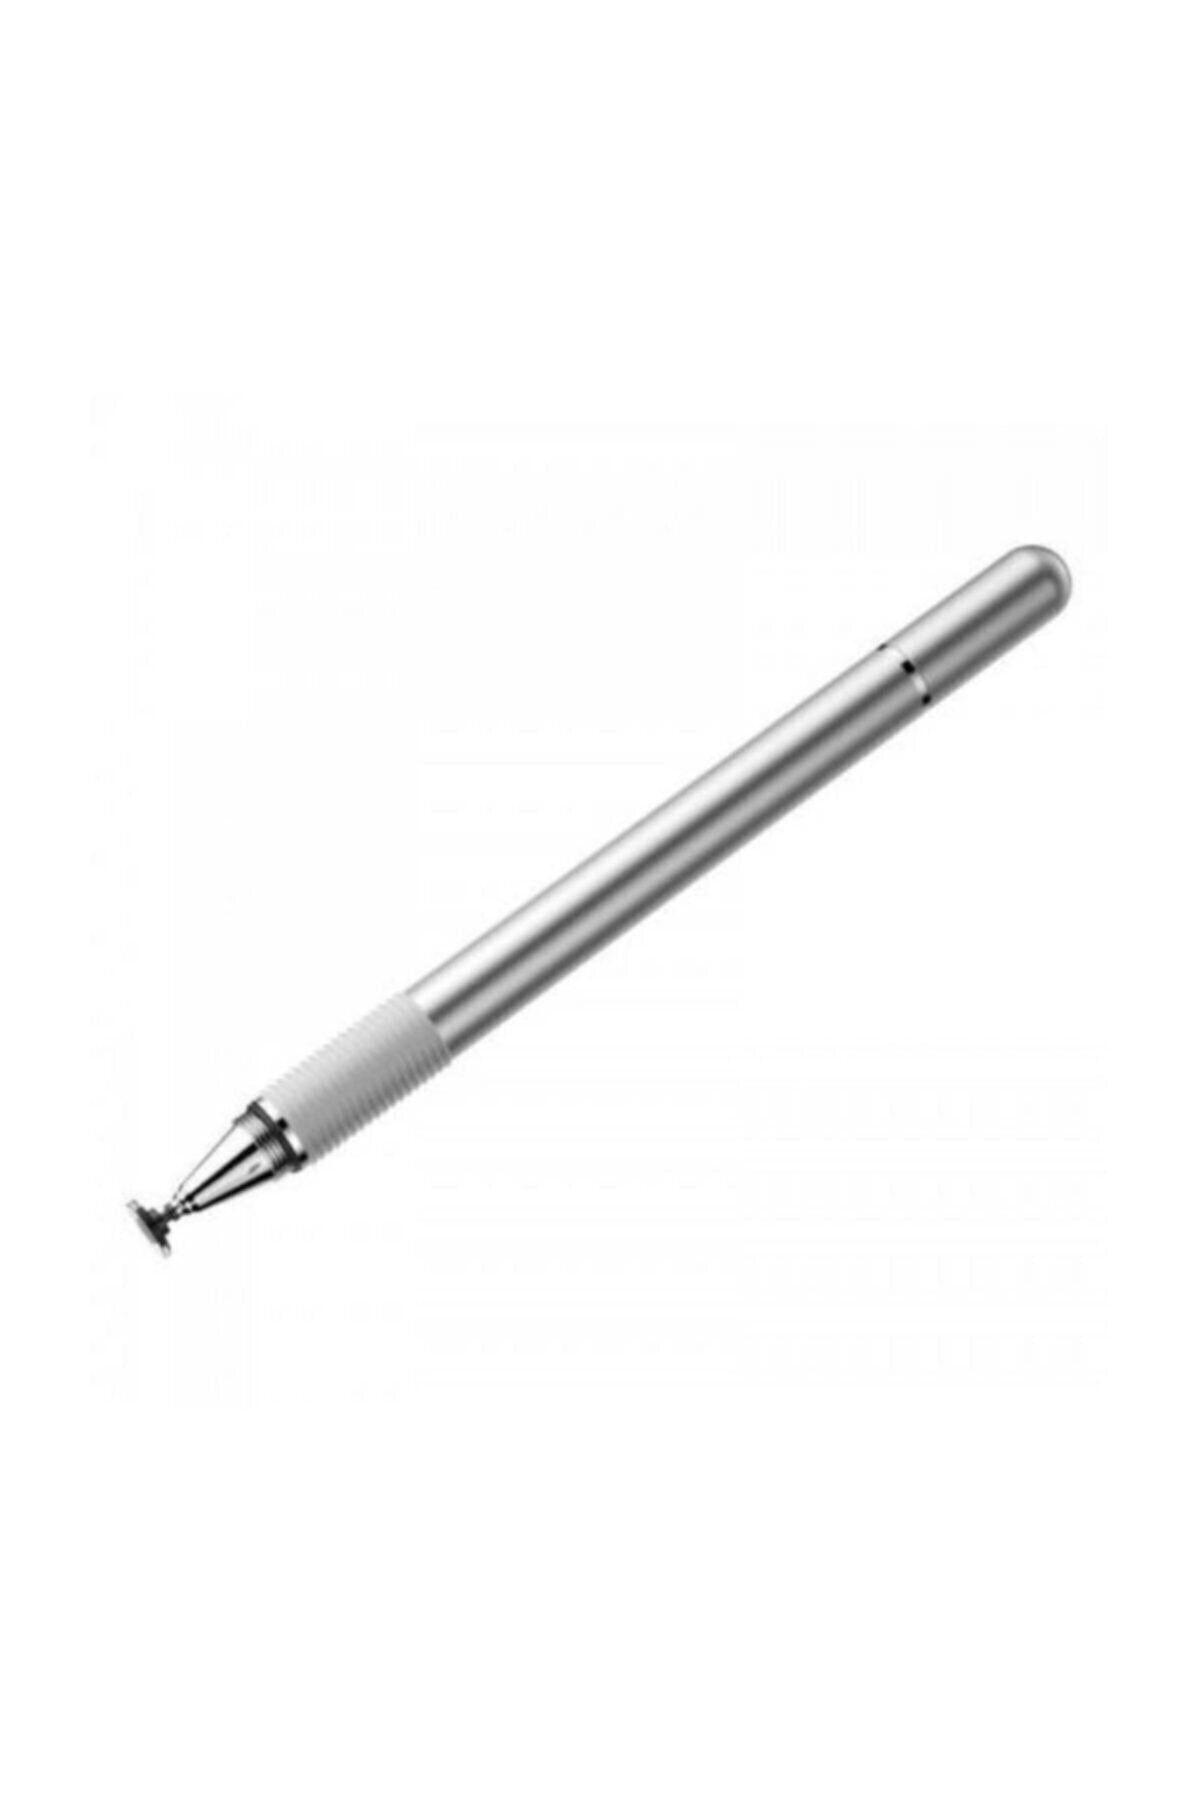 Baseus Golden Cudgel Serisi Capacitive Stylus Pen Kalem Gümüş